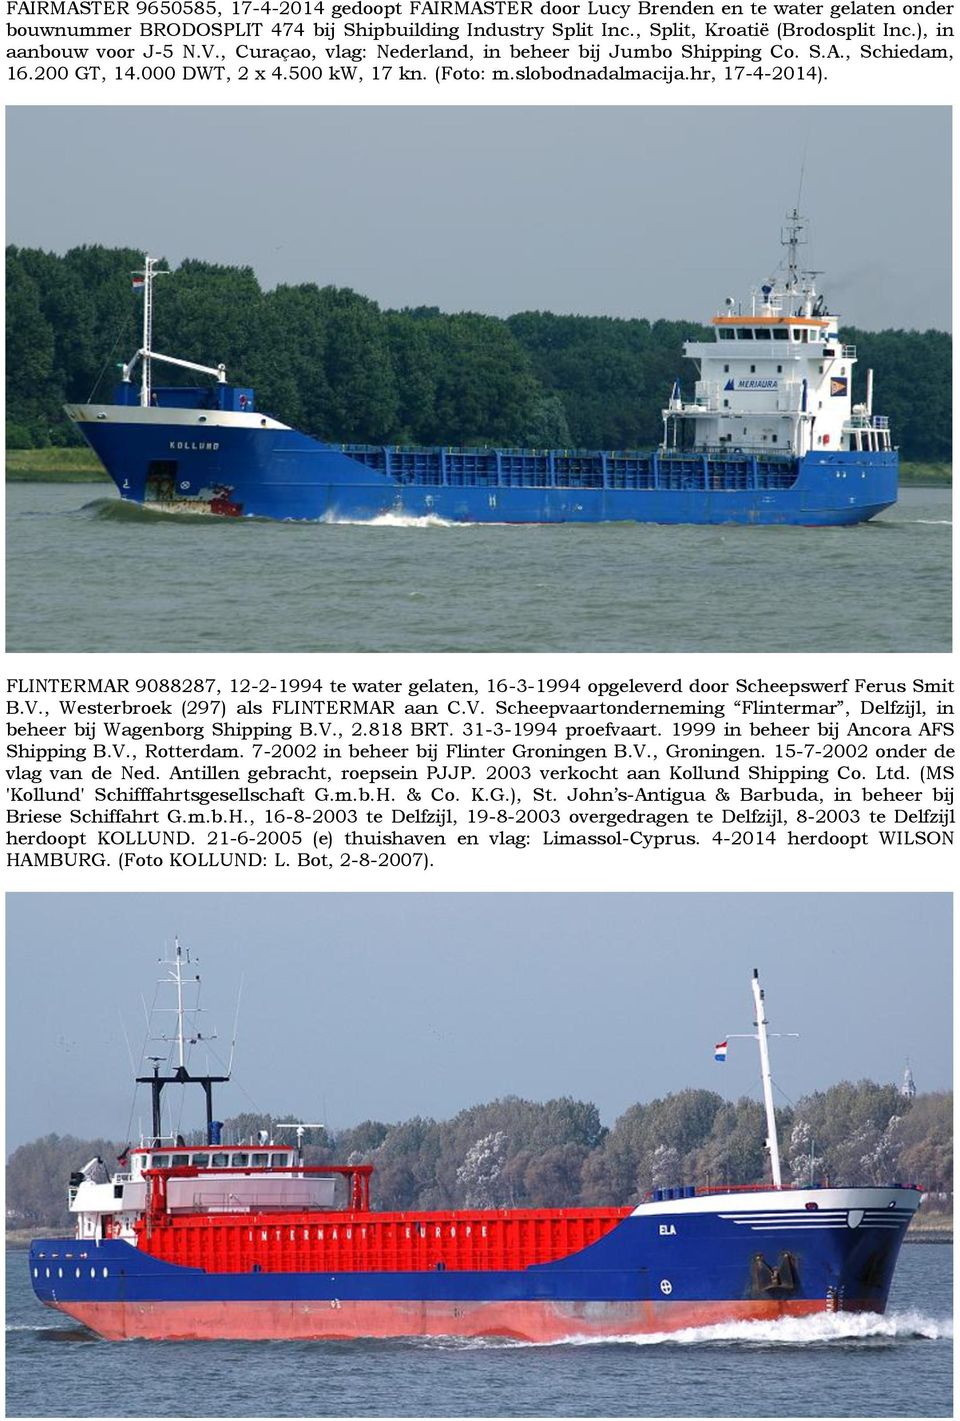 FLINTERMAR 9088287, 12-2-1994 te water gelaten, 16-3-1994 opgeleverd door Scheepswerf Ferus Smit B.V., Westerbroek (297) als FLINTERMAR aan C.V. Scheepvaartonderneming Flintermar, Delfzijl, in beheer bij Wagenborg Shipping B.